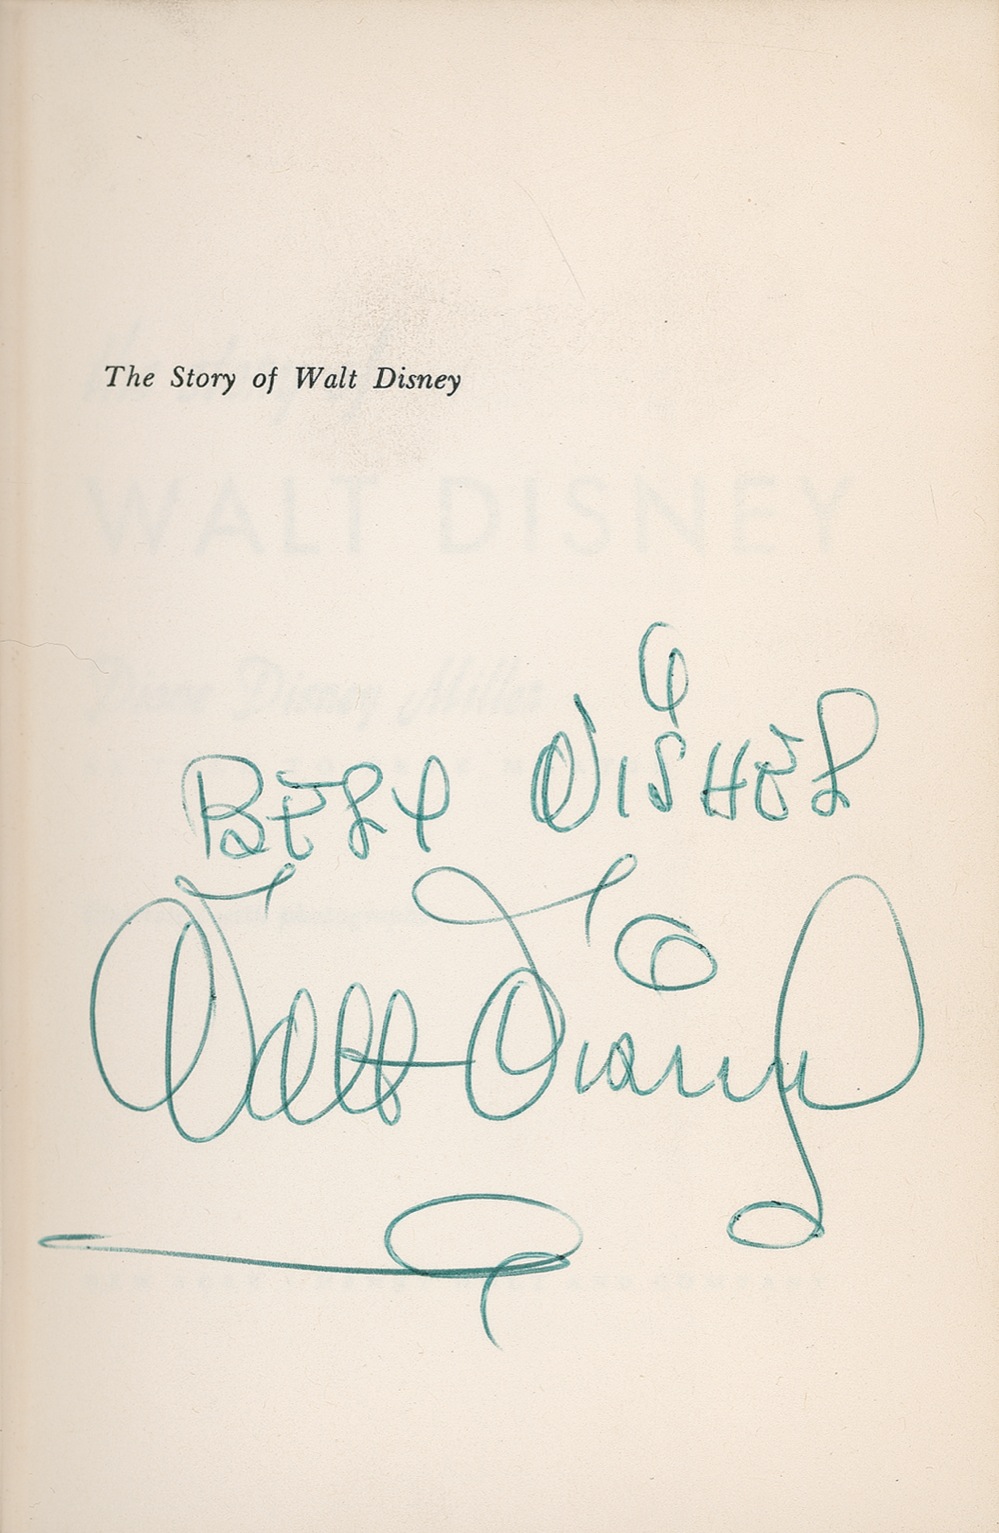 Lot #486 Walt Disney